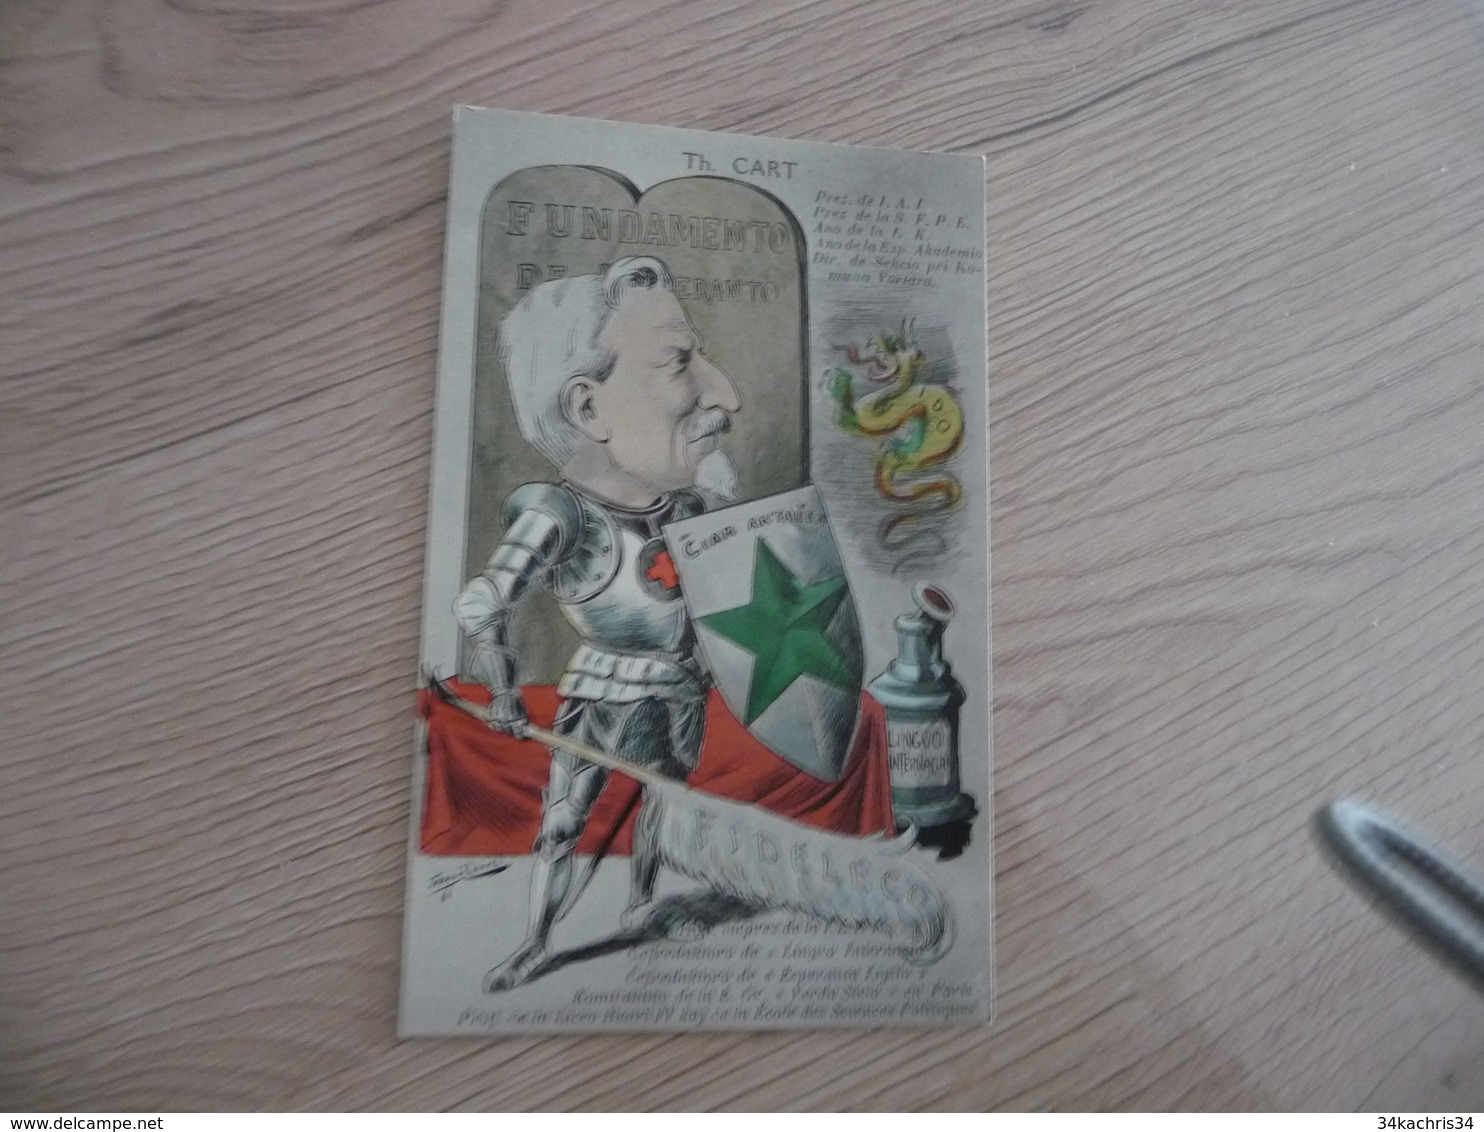 CPA Espéranto Illustrée Par Jean Robert TH.Cart Président De I.A.I. Et De La S.F.P.E. - Esperanto